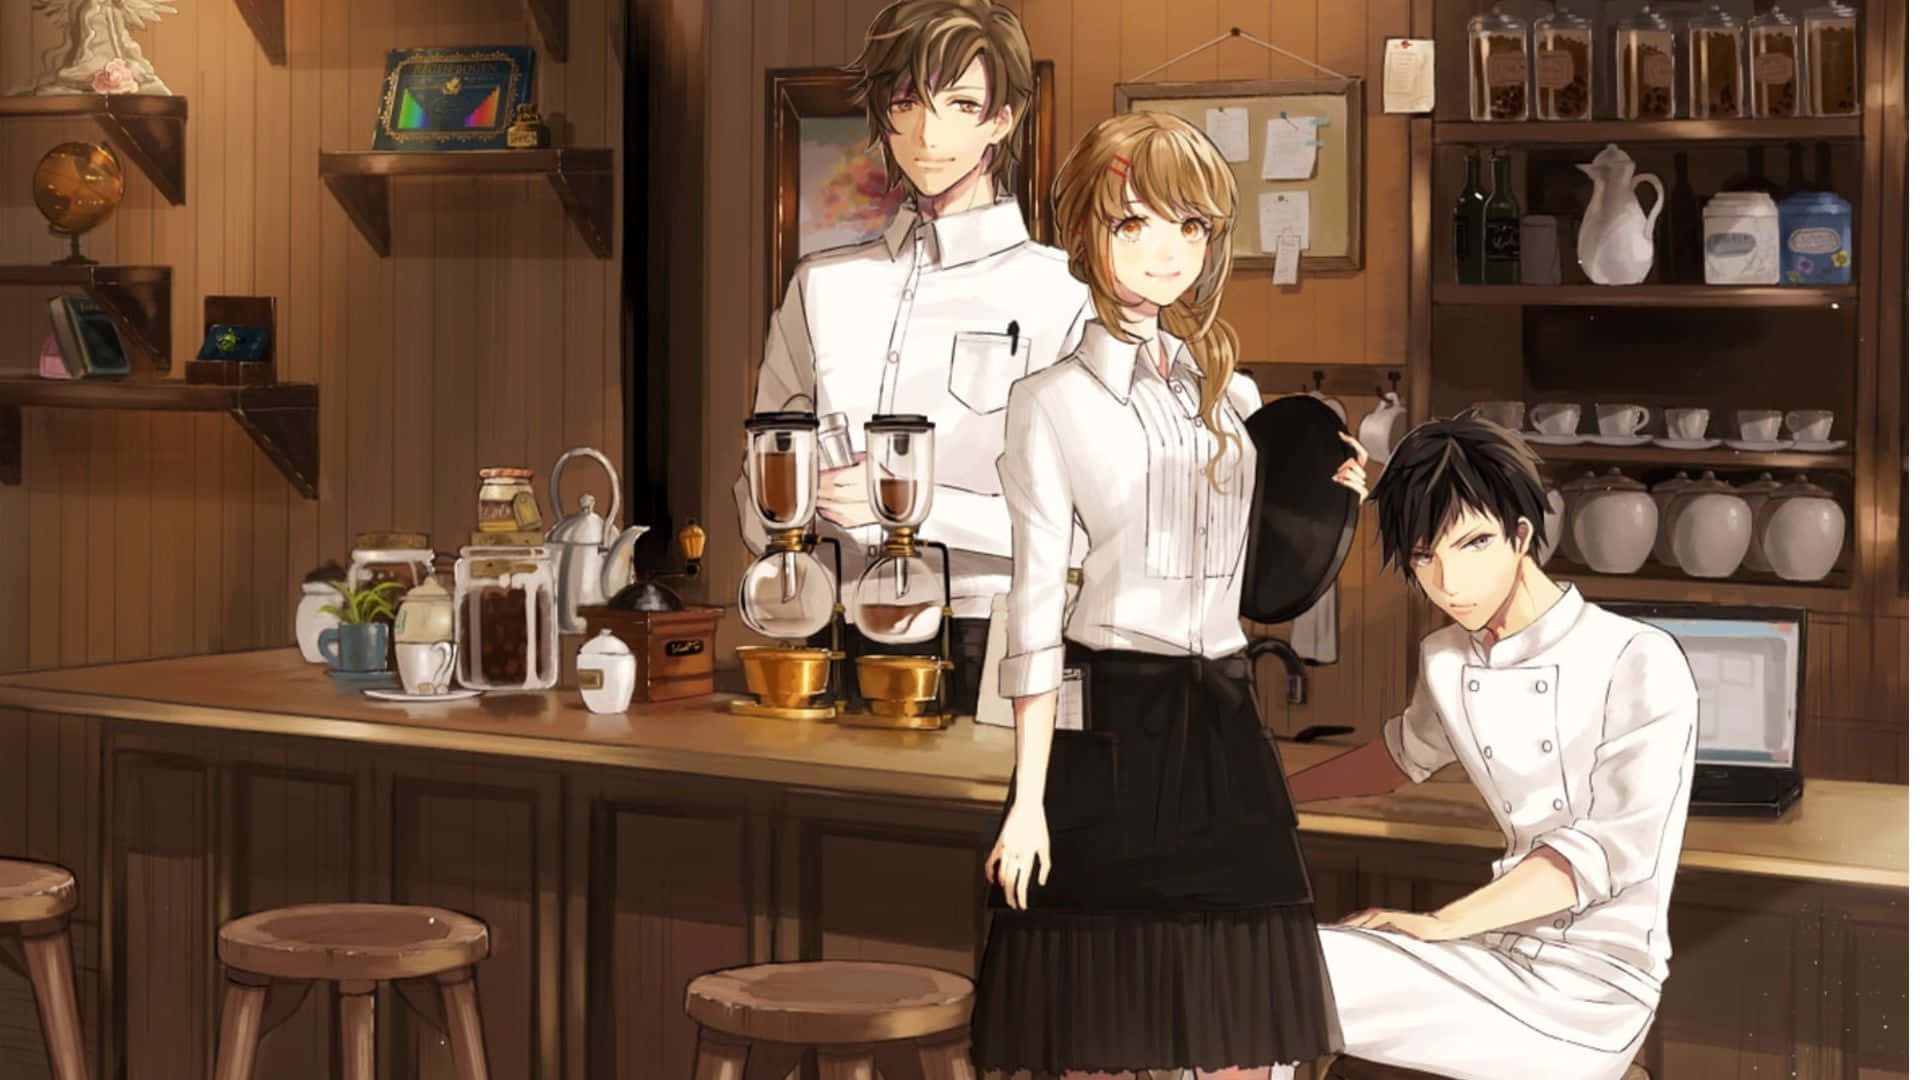 Anime Kokoro Cafe Baggrund: Giv dit skrivebord en animeret følelse med denne lyse anime Kokoro Cafe baggrund.